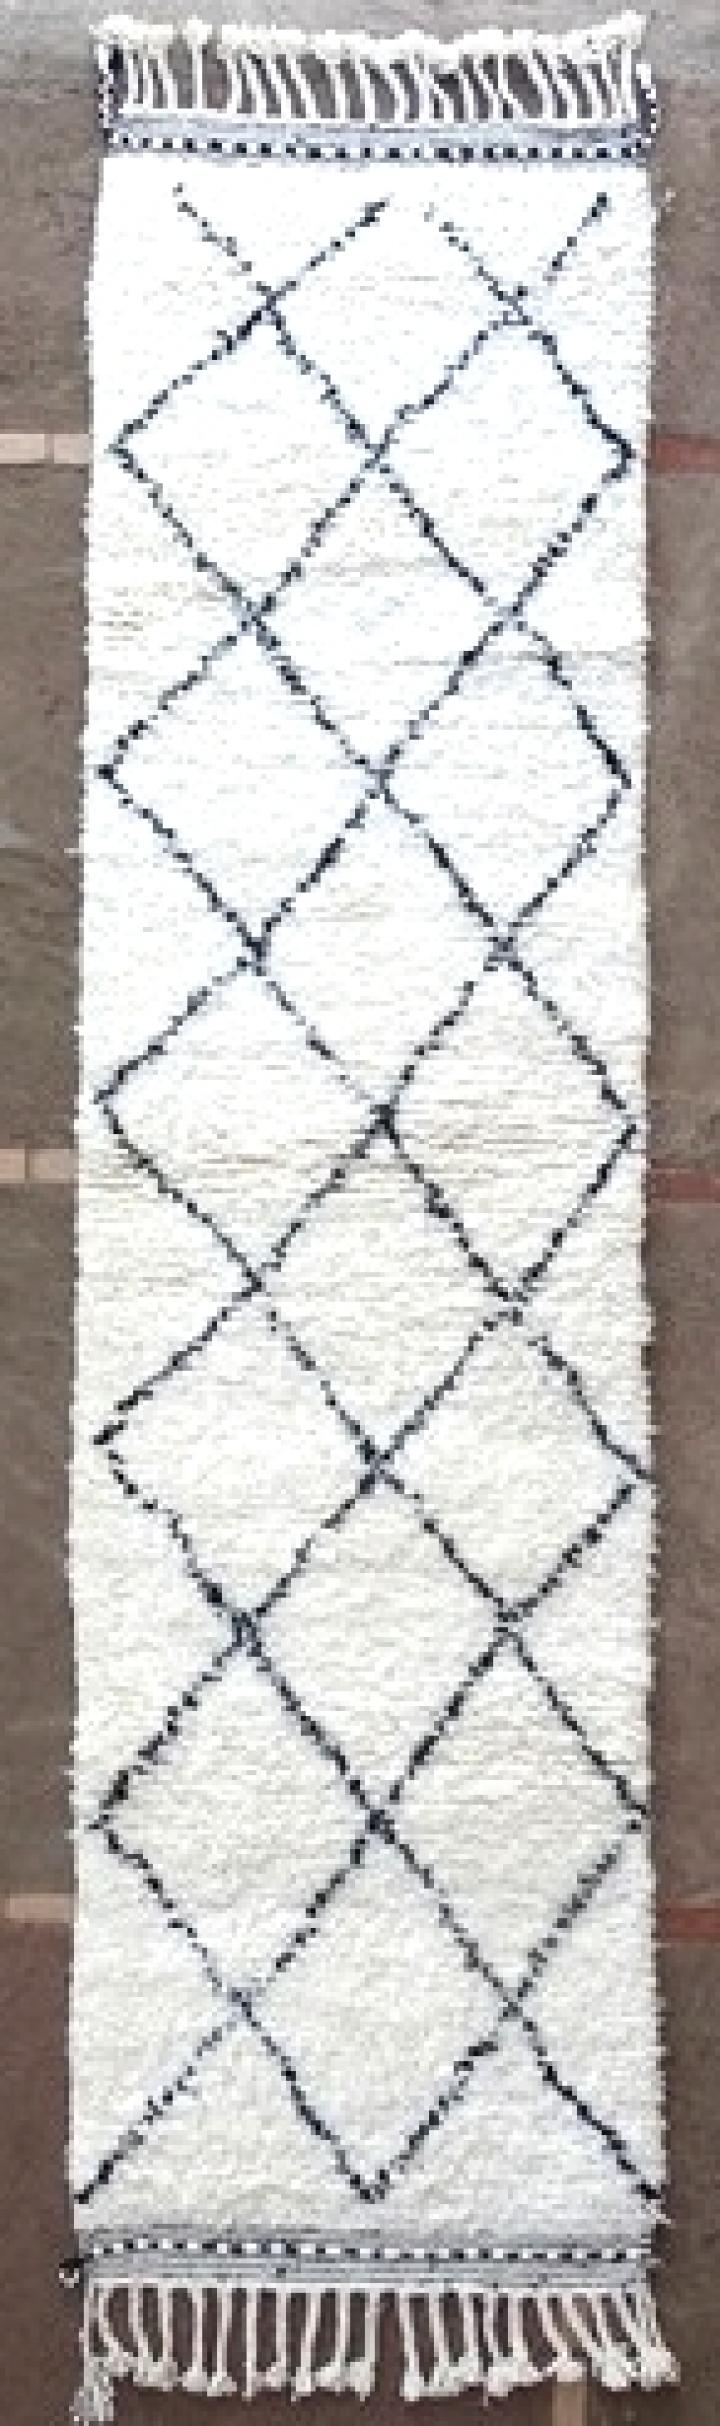 Moroccan runner rug berber runner rug beni ourain runner rug handmade runner rug wool runner rug kilim runner rug moroccan rug berber rug